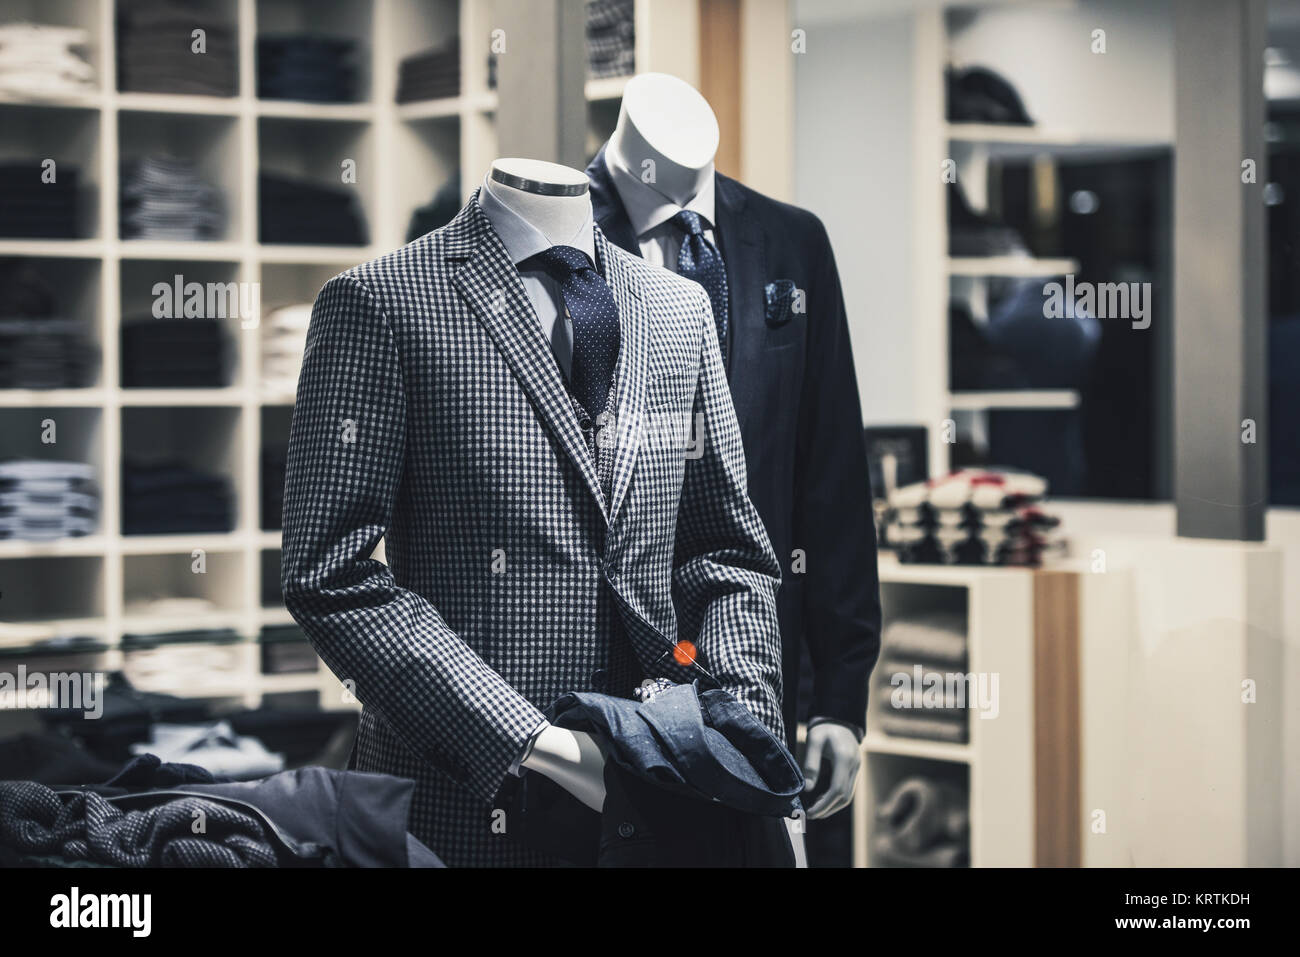 Men elegant clothing showcase Stock Photo - Alamy